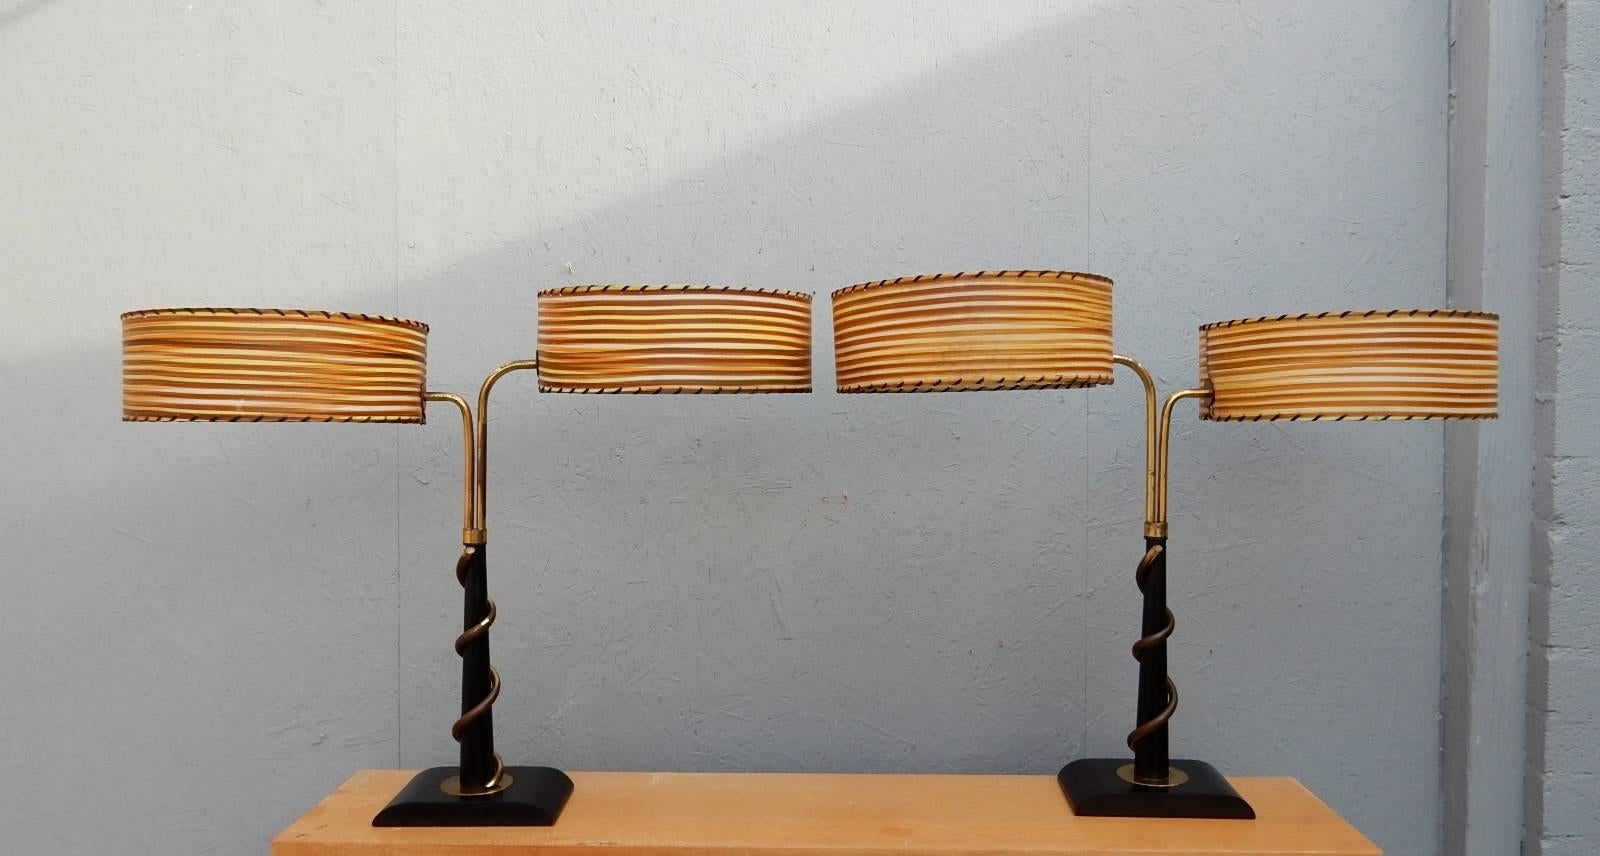 Seltenes, frühes Lampenpaar der Firma Majestic Lamp Co.
Wirbel aus vermessingtem Kupfer über ebonisierter Eiche. Jede hat zwei original gestreifte Schirme. Einige Verblassen auf Schattierungen und trüben auf Plattierung, die man von Alter erwarten